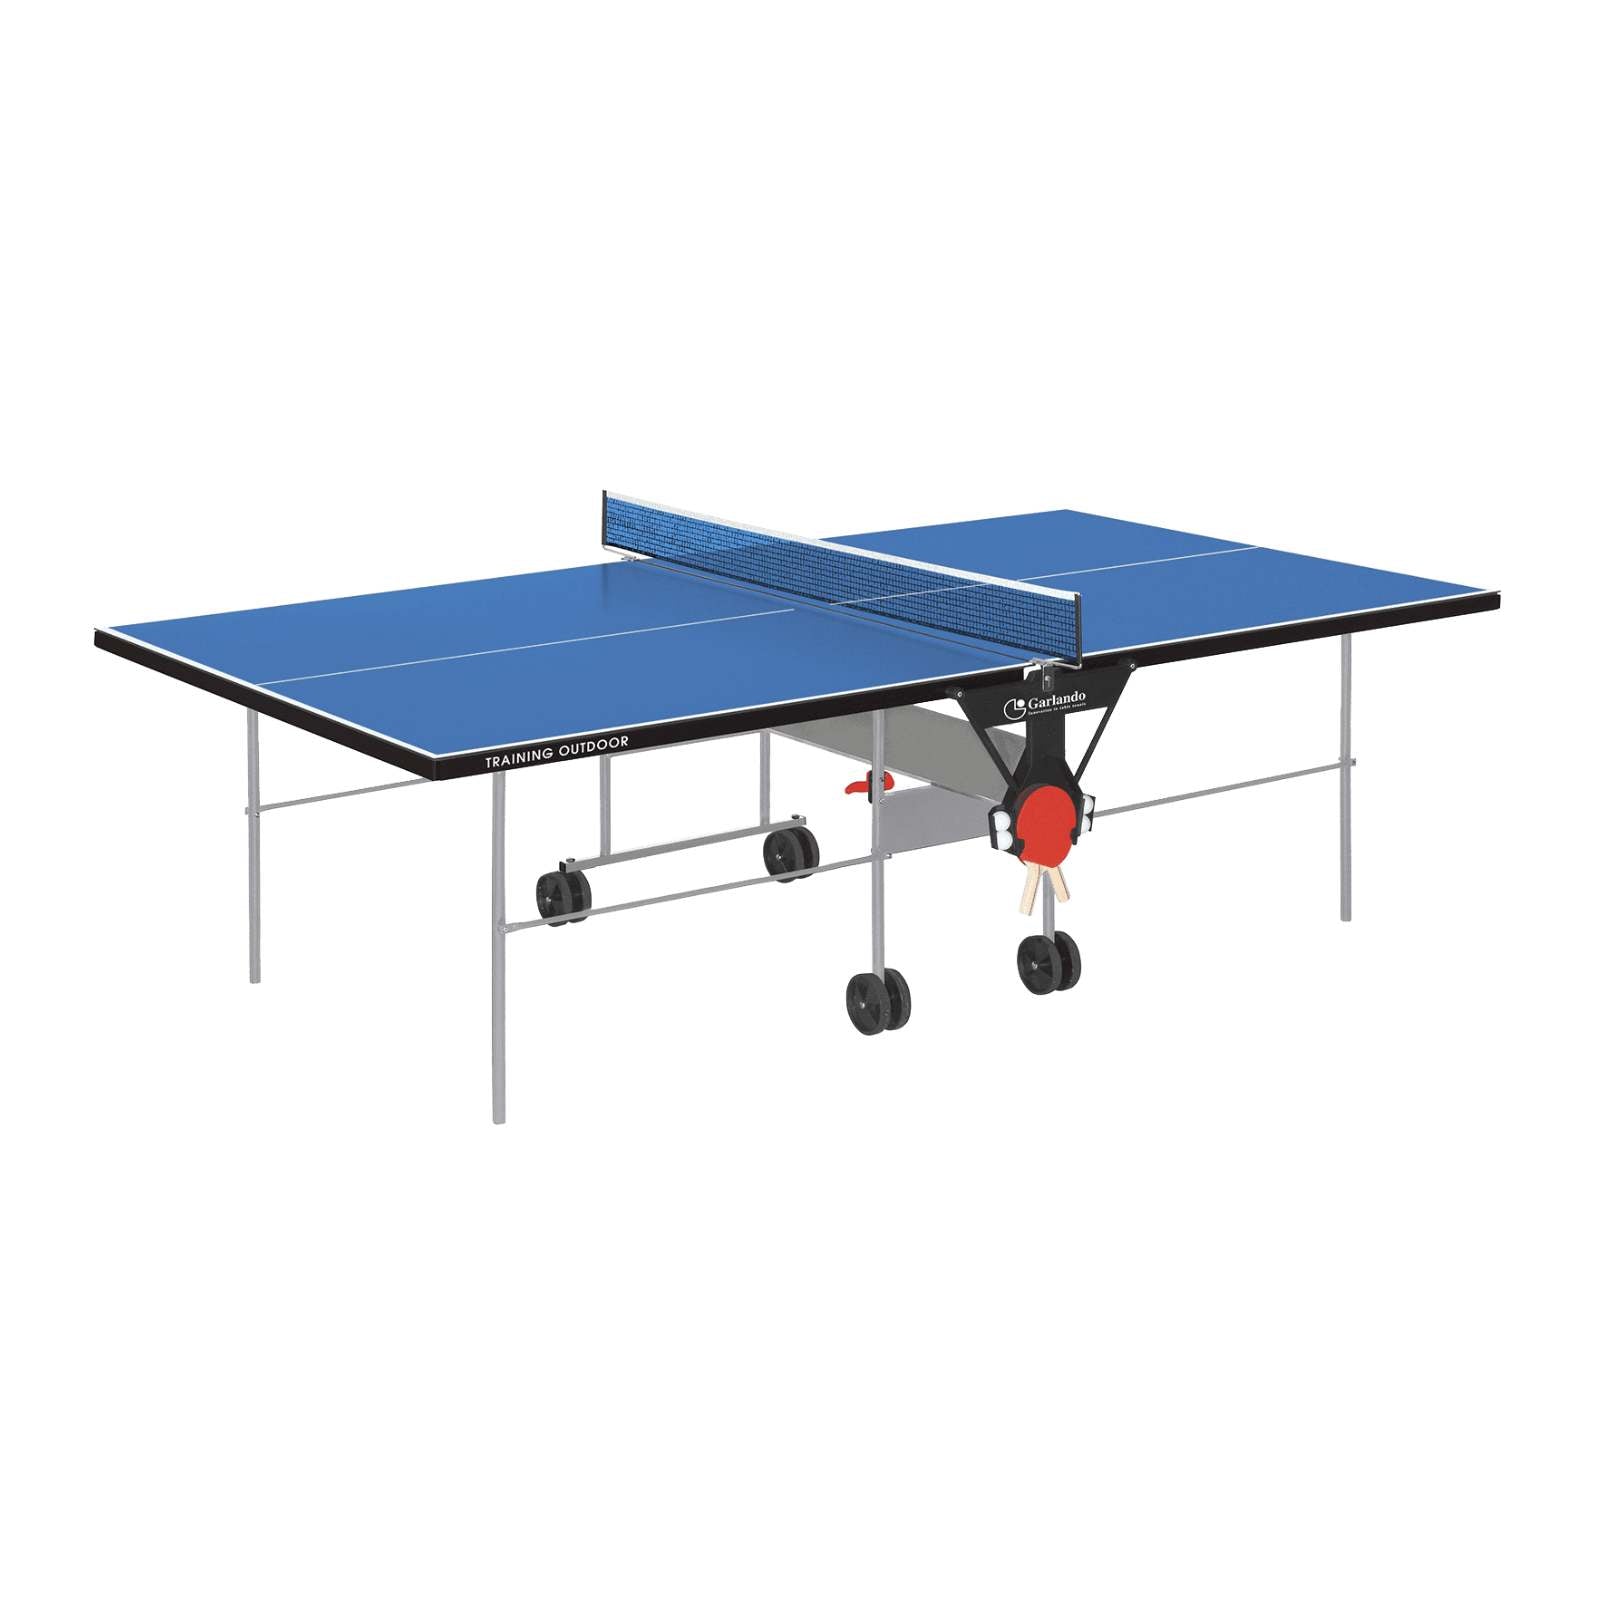 Training Outdoor - Tavolo Ping Pong Pieghevole per Gioco Amatoriale e Familiare